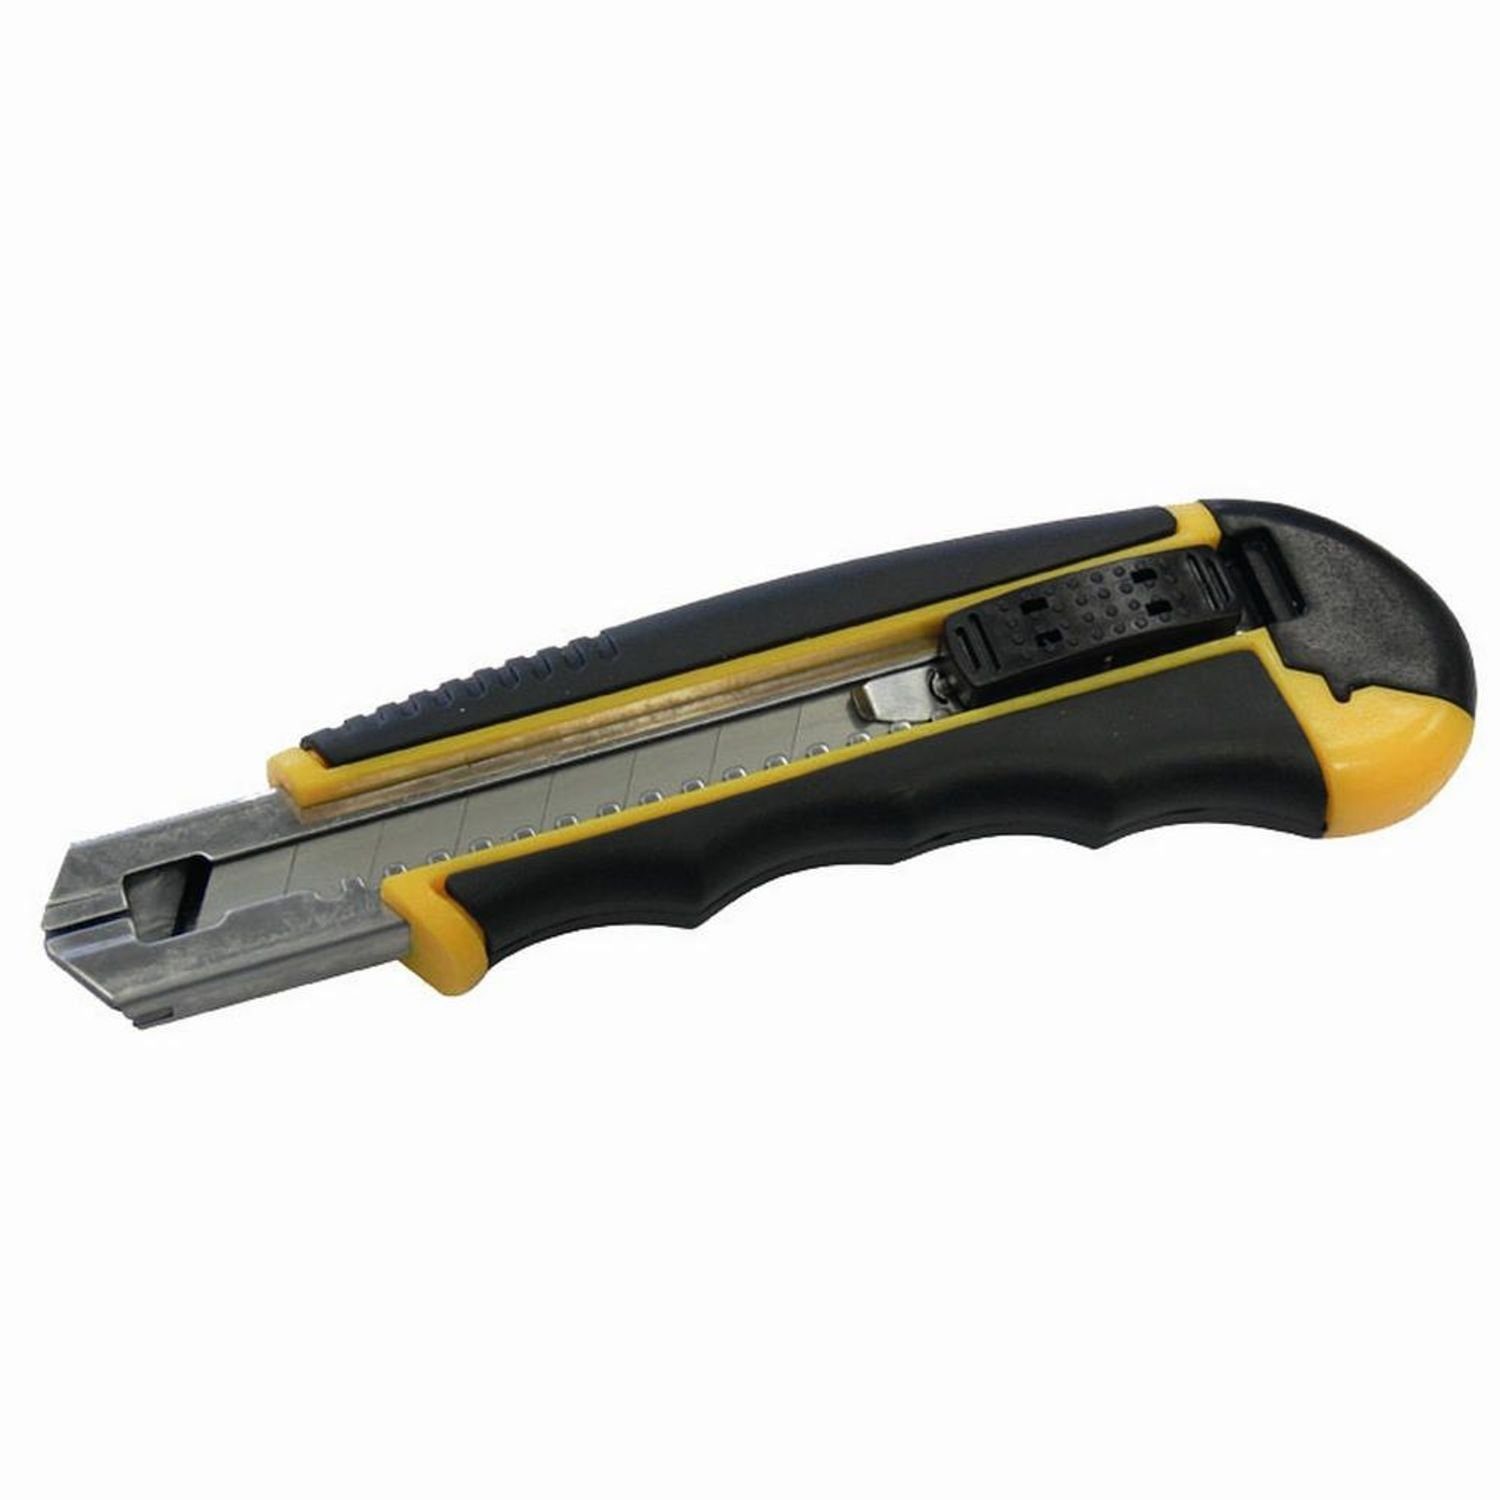 IRONSIDE Cuttermesser Cuttermesser 18mm+Magazin m.6Klingen 2Komp-Griff | Cutter